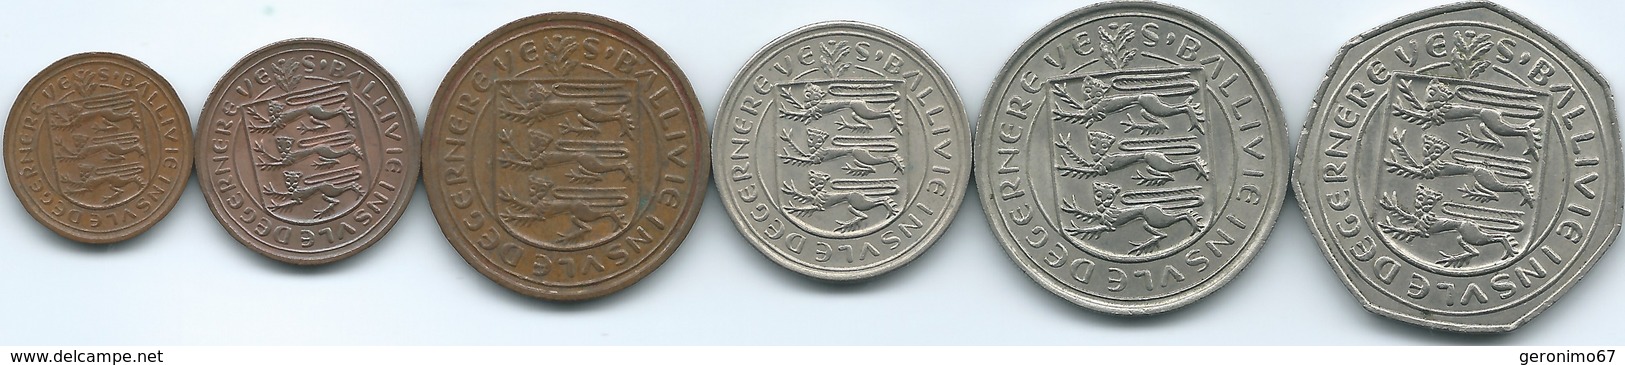 Guernsey - Elizabeth II - Decimal - ½ (1971) 1 (1971) 2 (1971) 5 (1968) 10 (1968) & 50 Pence (1970) (KMs 20-25) - Guernsey